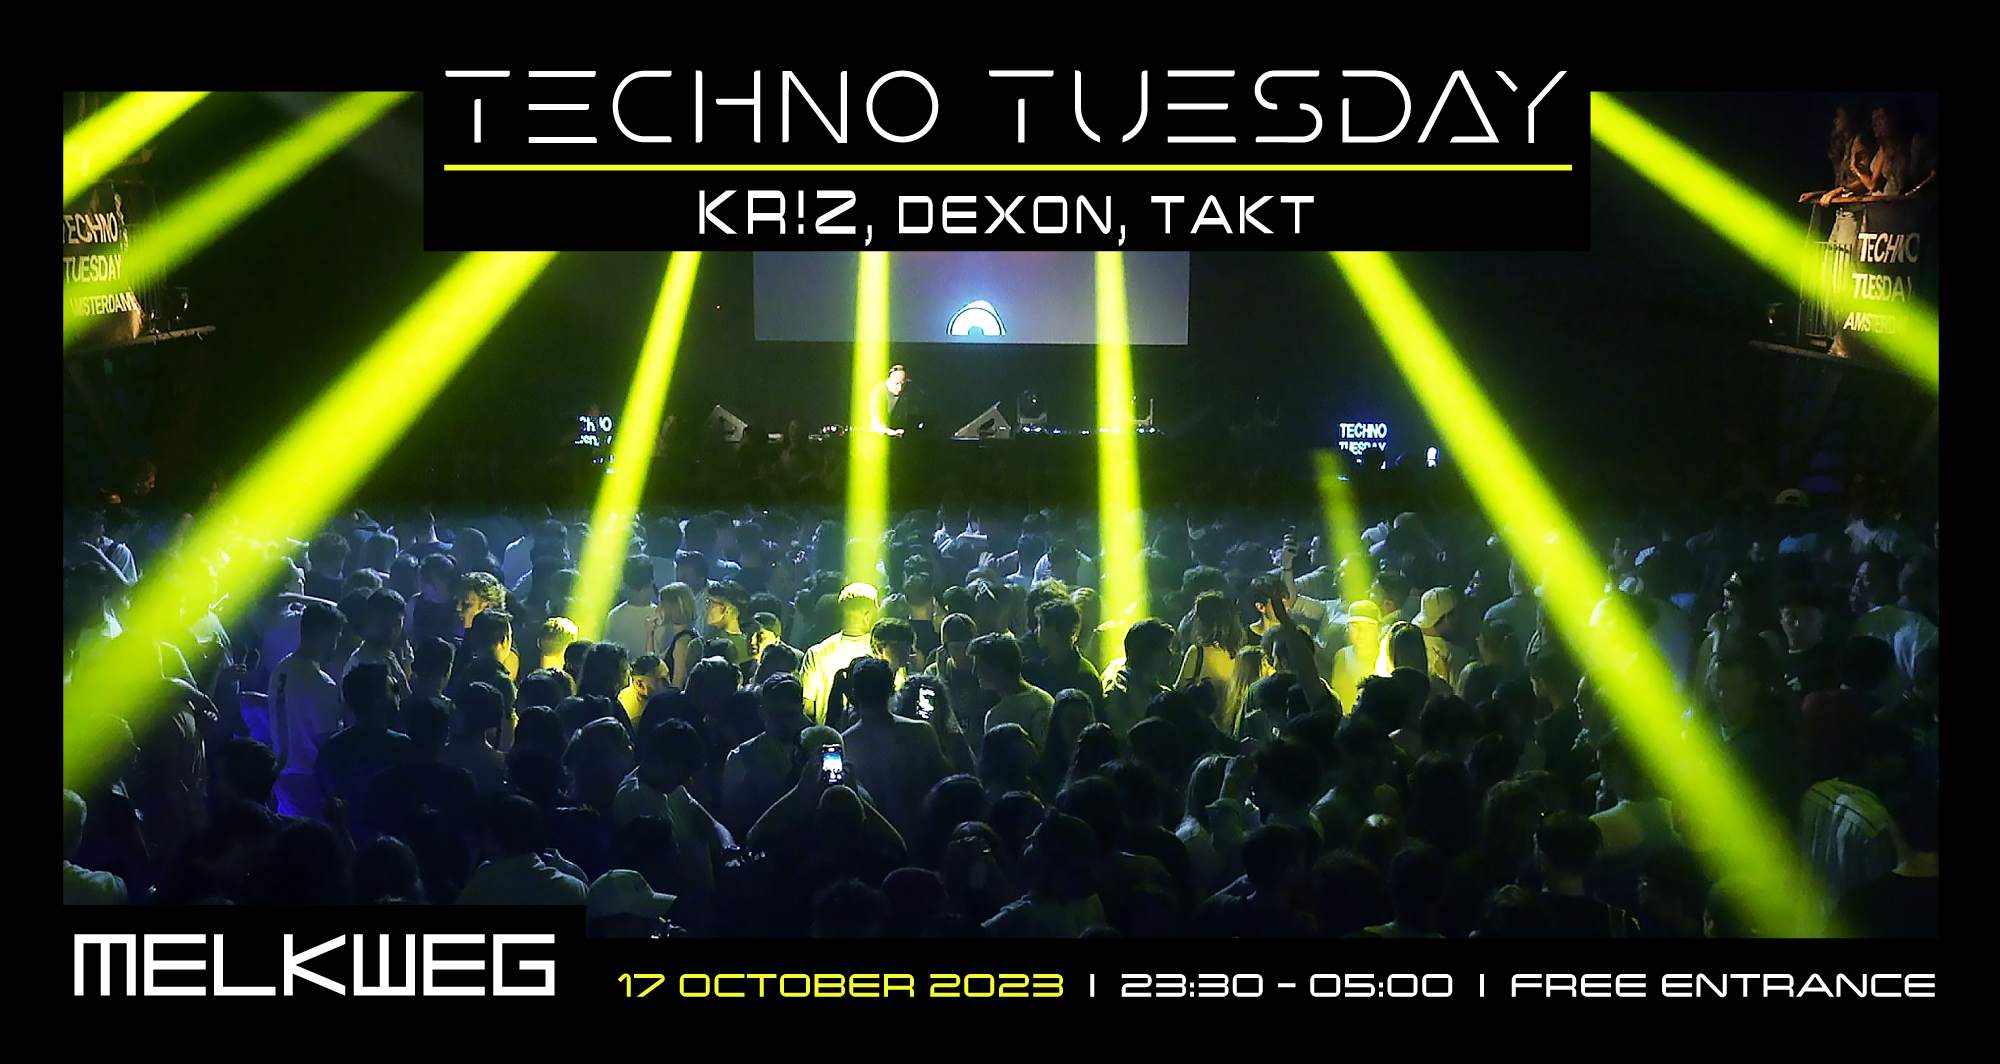 Techno Tuesday Amsterdam, Kr!z, Dexon, Takt - Página frontal